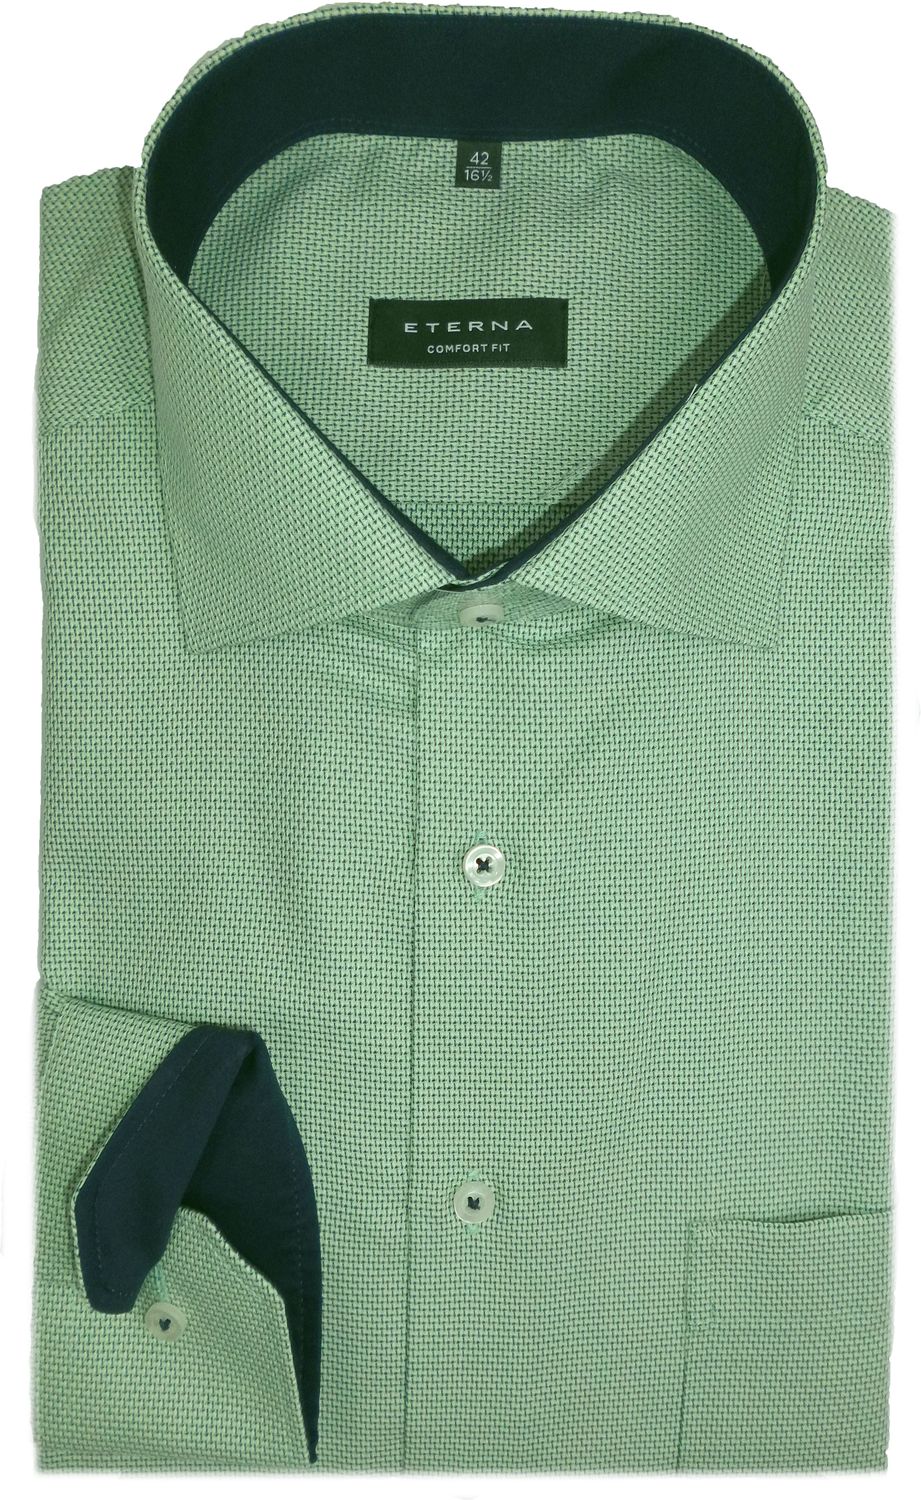 Level - Bewusst 65 Modehaus Comfort Mode Hemd erleben eterna Green Fit Uphoff cm 4063/41 | E15K Struktur grün Arm